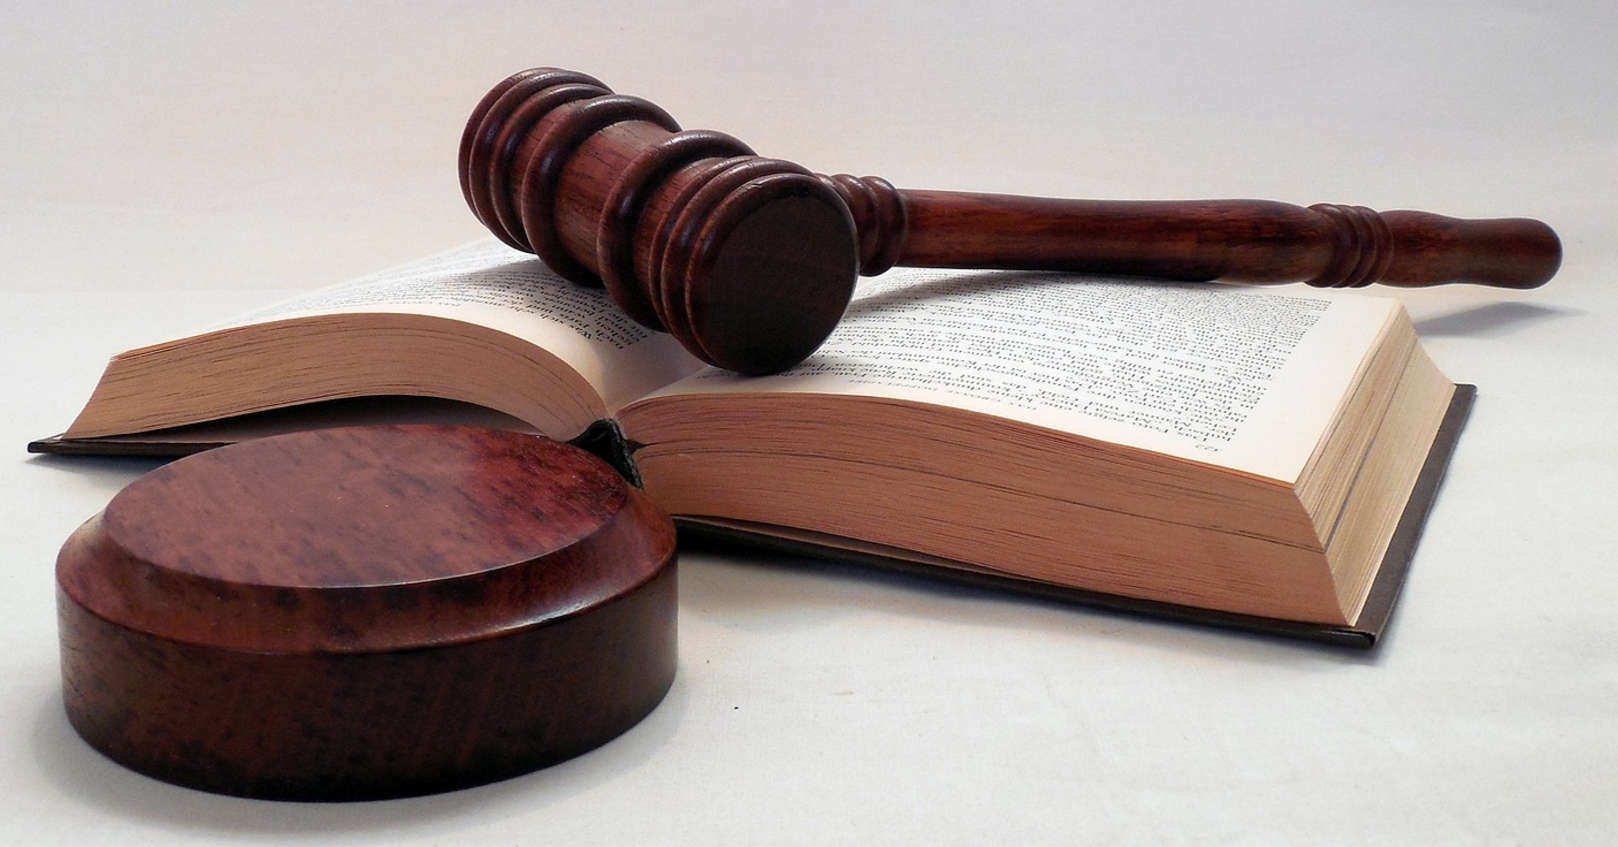 Summary Judgment in Nunes VS Rushton Copyright Infringement Case